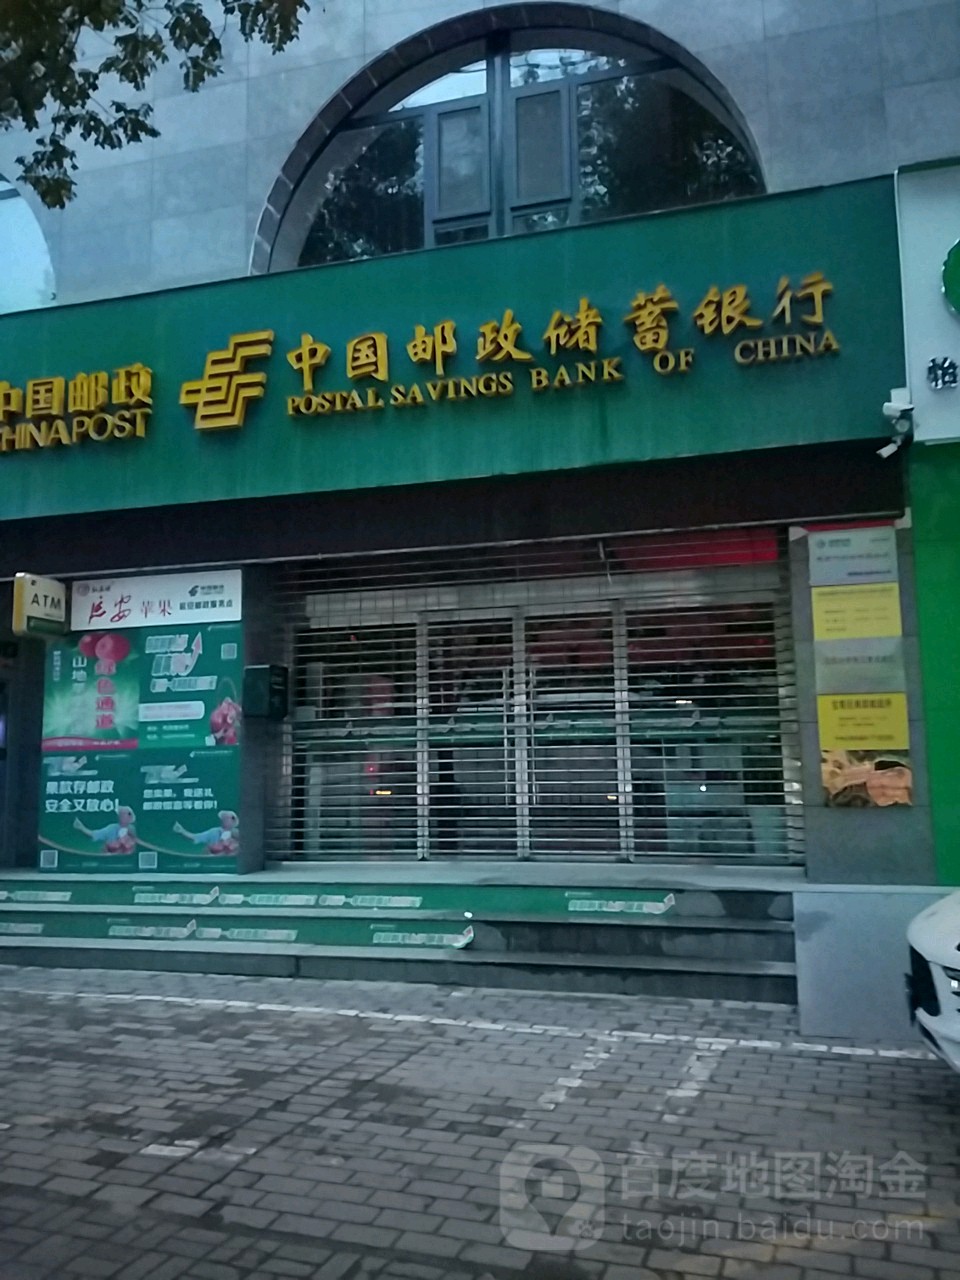 中國郵政儲蓄銀行(南濱大道郵政儲蓄)